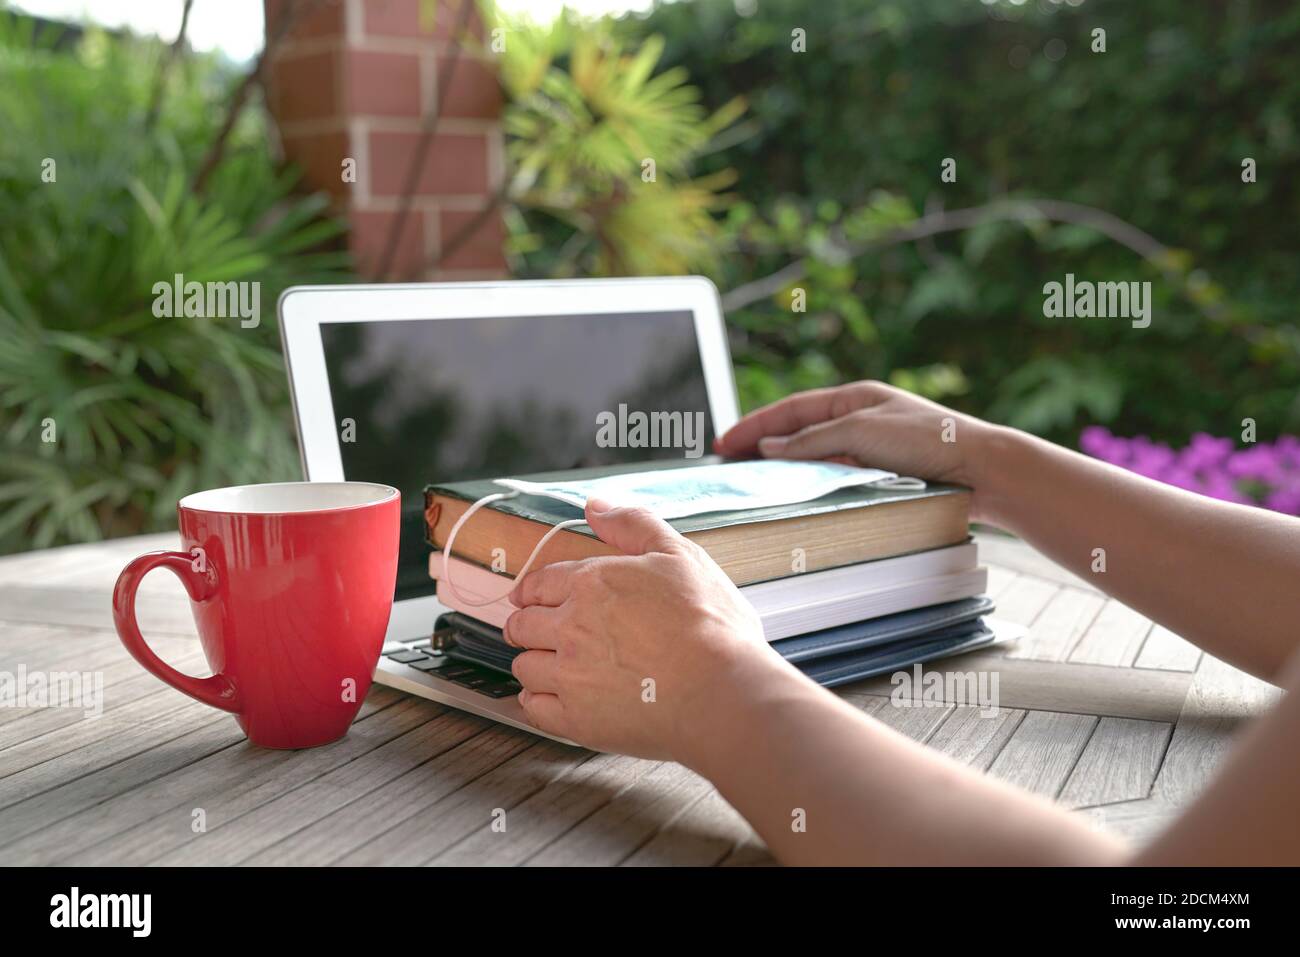 Femme mains sur des livres empilés avec masque sur le dessus de l'ordinateur portable ouvert avec une tasse rouge. Étudier à domicile pendant le concept de pandémie. Banque D'Images